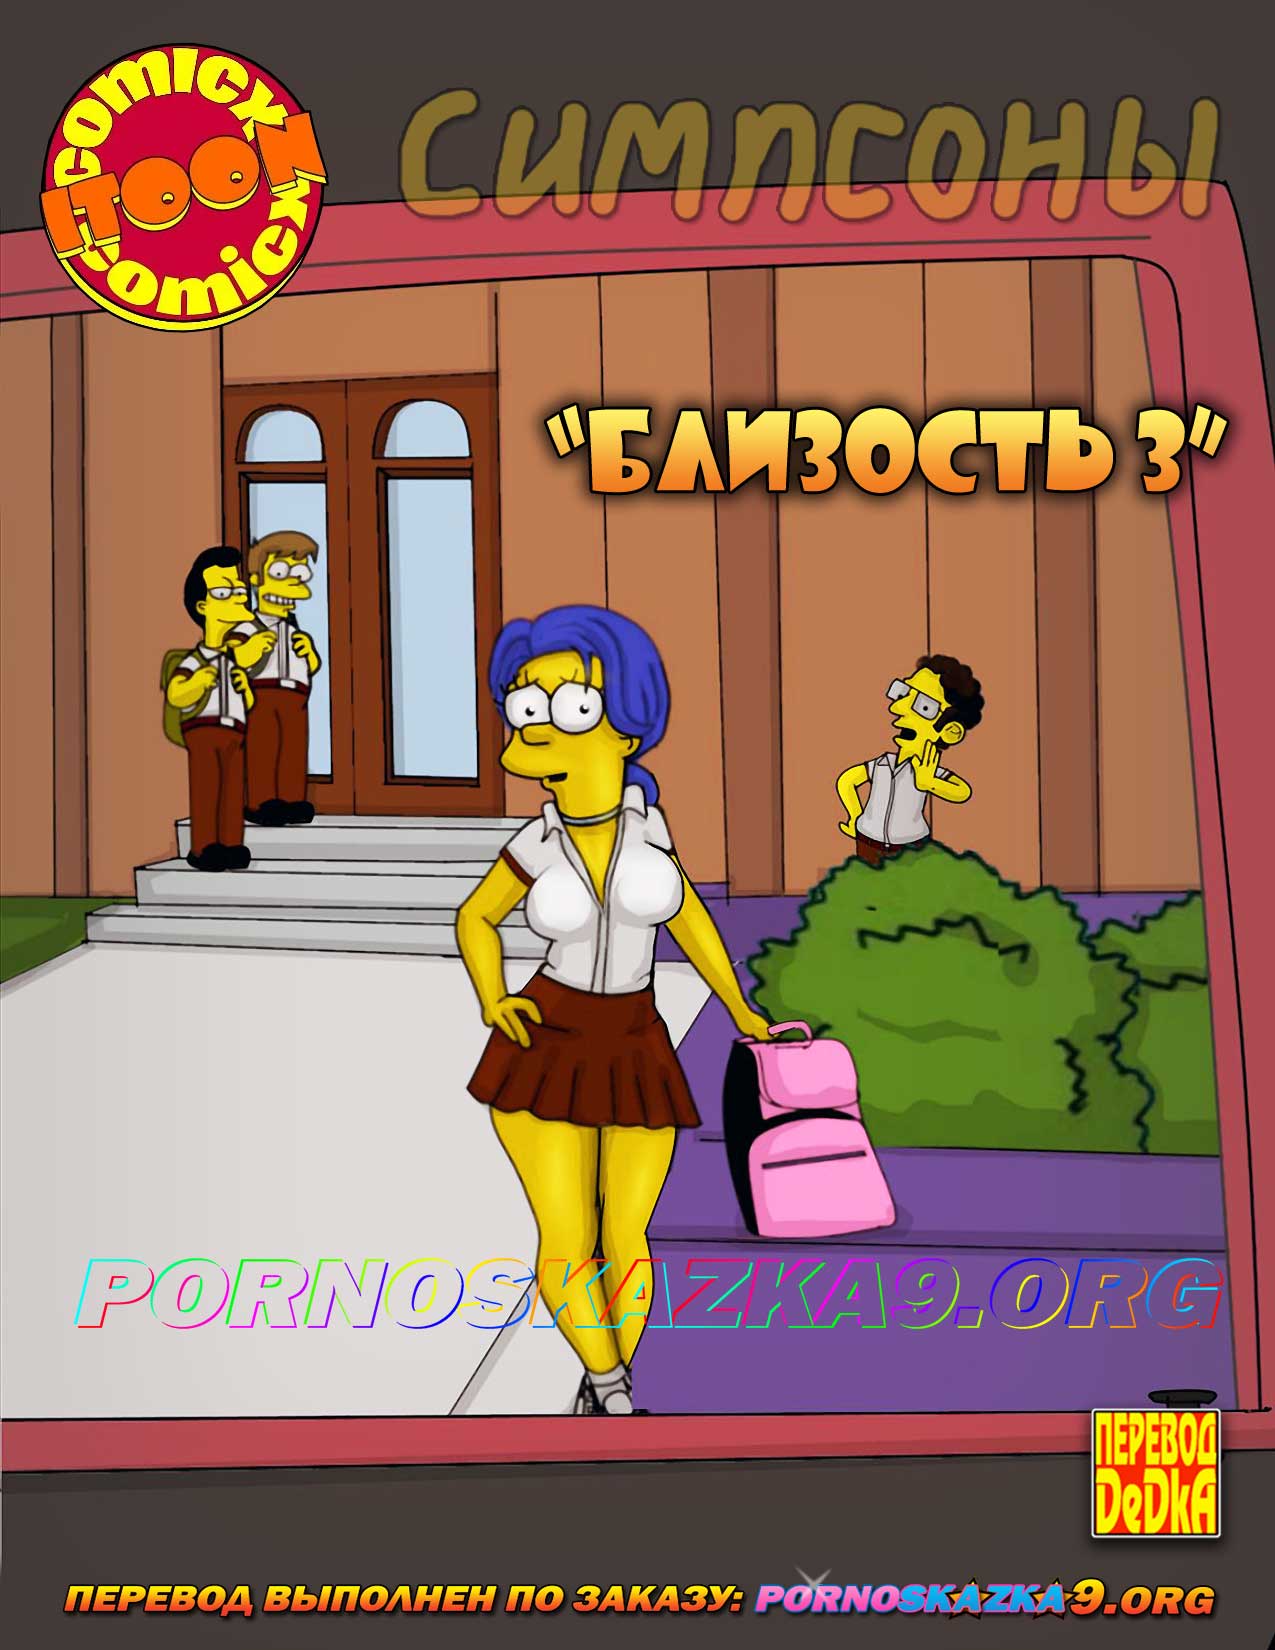 Мардж Симпсон была выебана длинными тентаклями во все дырки: Хентай мультик